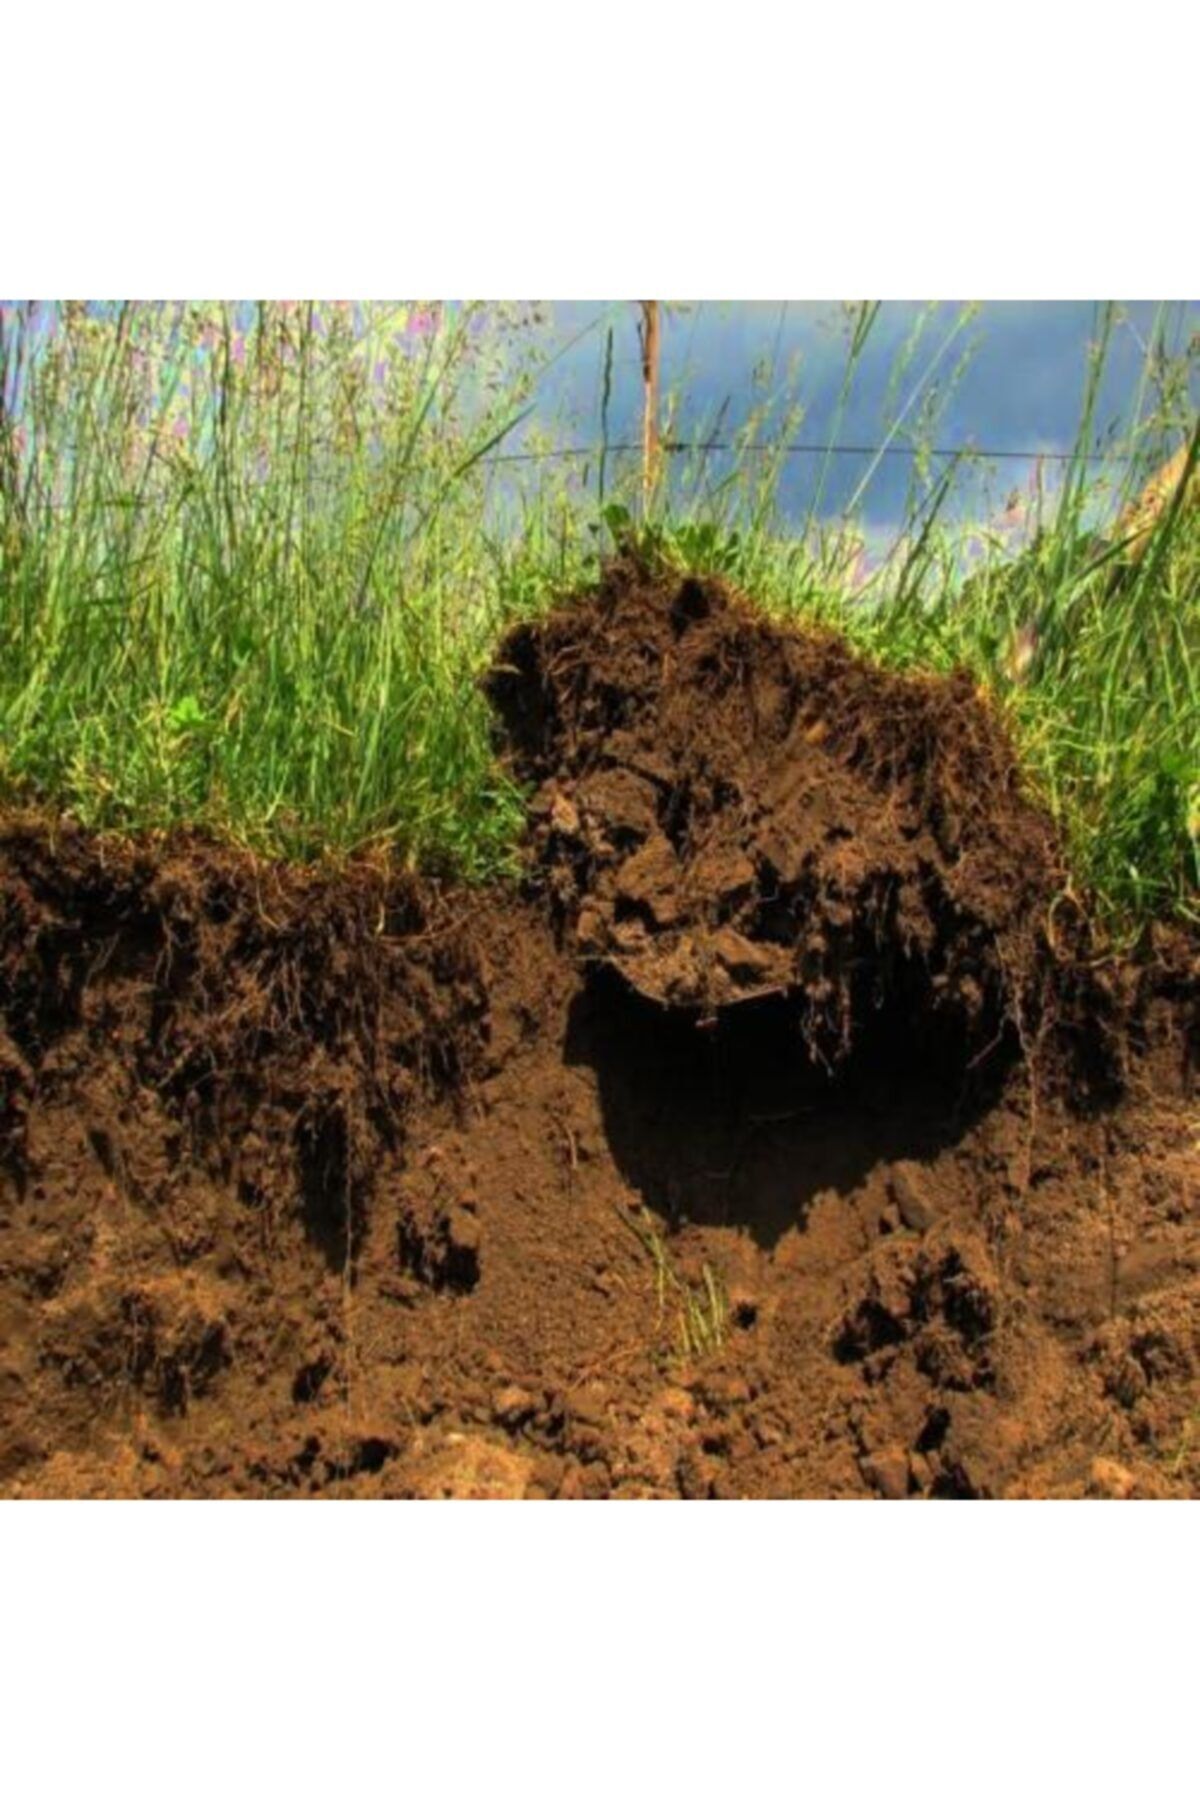 Почвы малоплодородны и сильно заболочены короткие